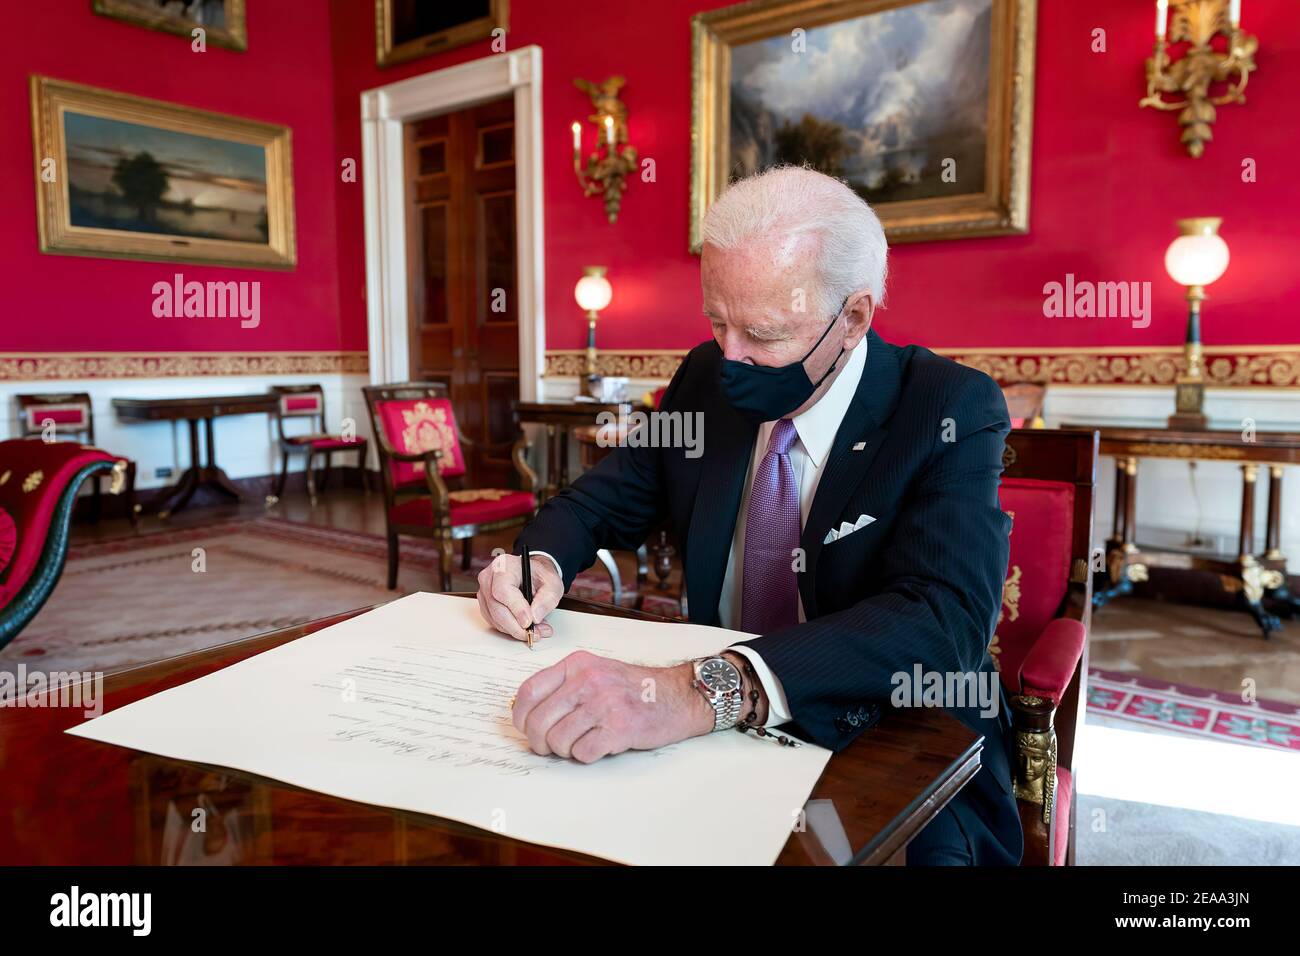 Le président Joe Biden signe la commission pour qu'avril Haines soit le directeur du renseignement national le jeudi 21 janvier 2021, dans la salle rouge de la Maison Blanche. (Photo officielle de la Maison Blanche par Adam Schultz) Banque D'Images